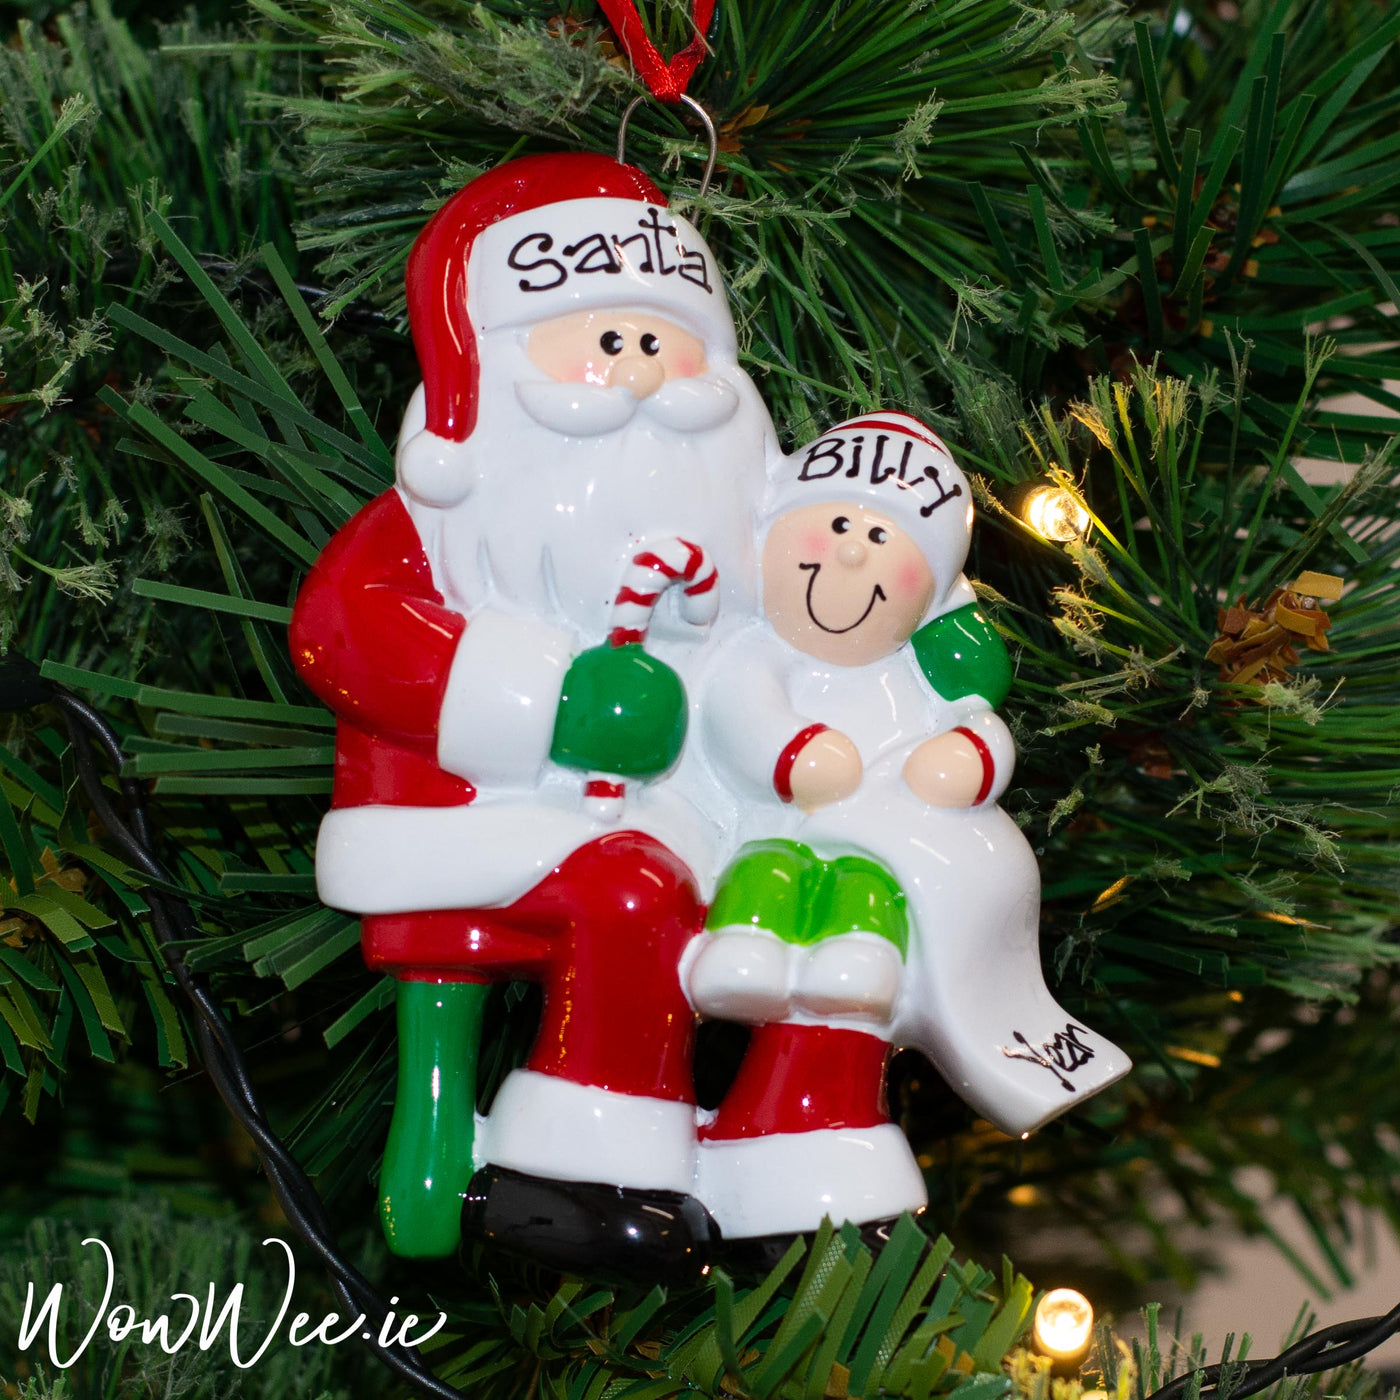 Personalised Christmas Ornament - Santa Visit - WowWee.ie Personalised Gifts